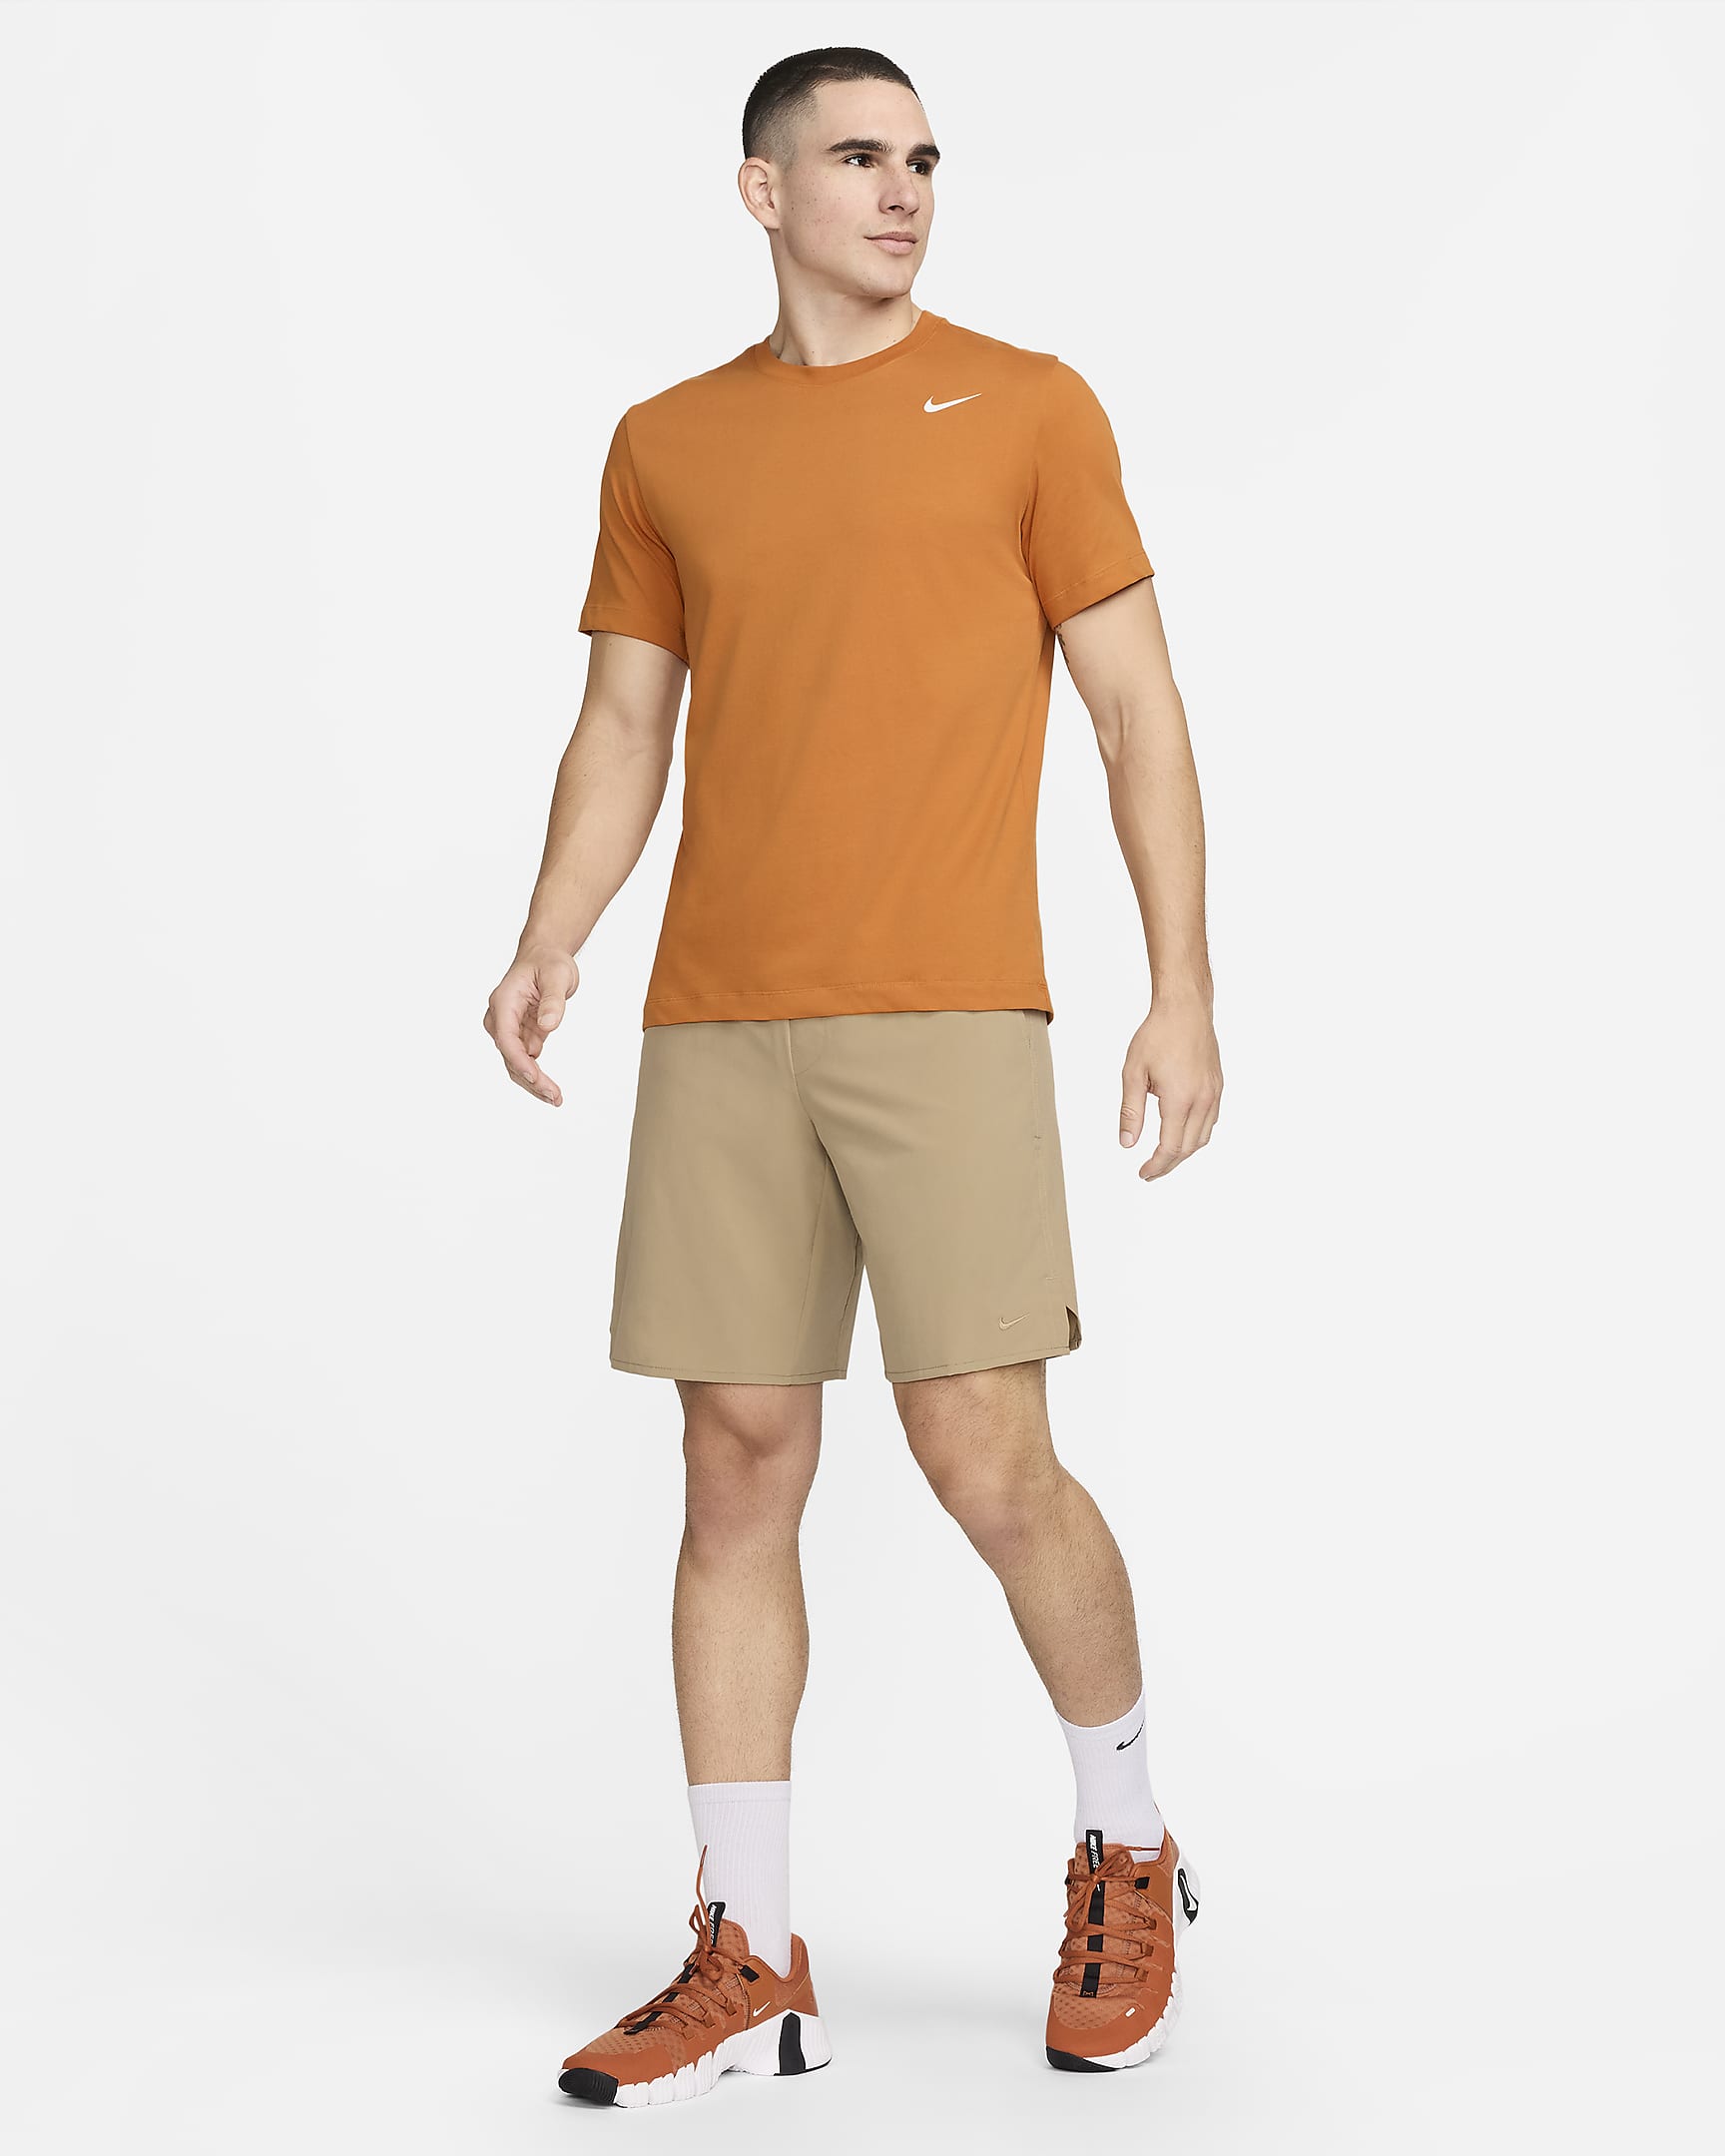 Nike Dri-FIT Men's Fitness T-Shirt - Monarch